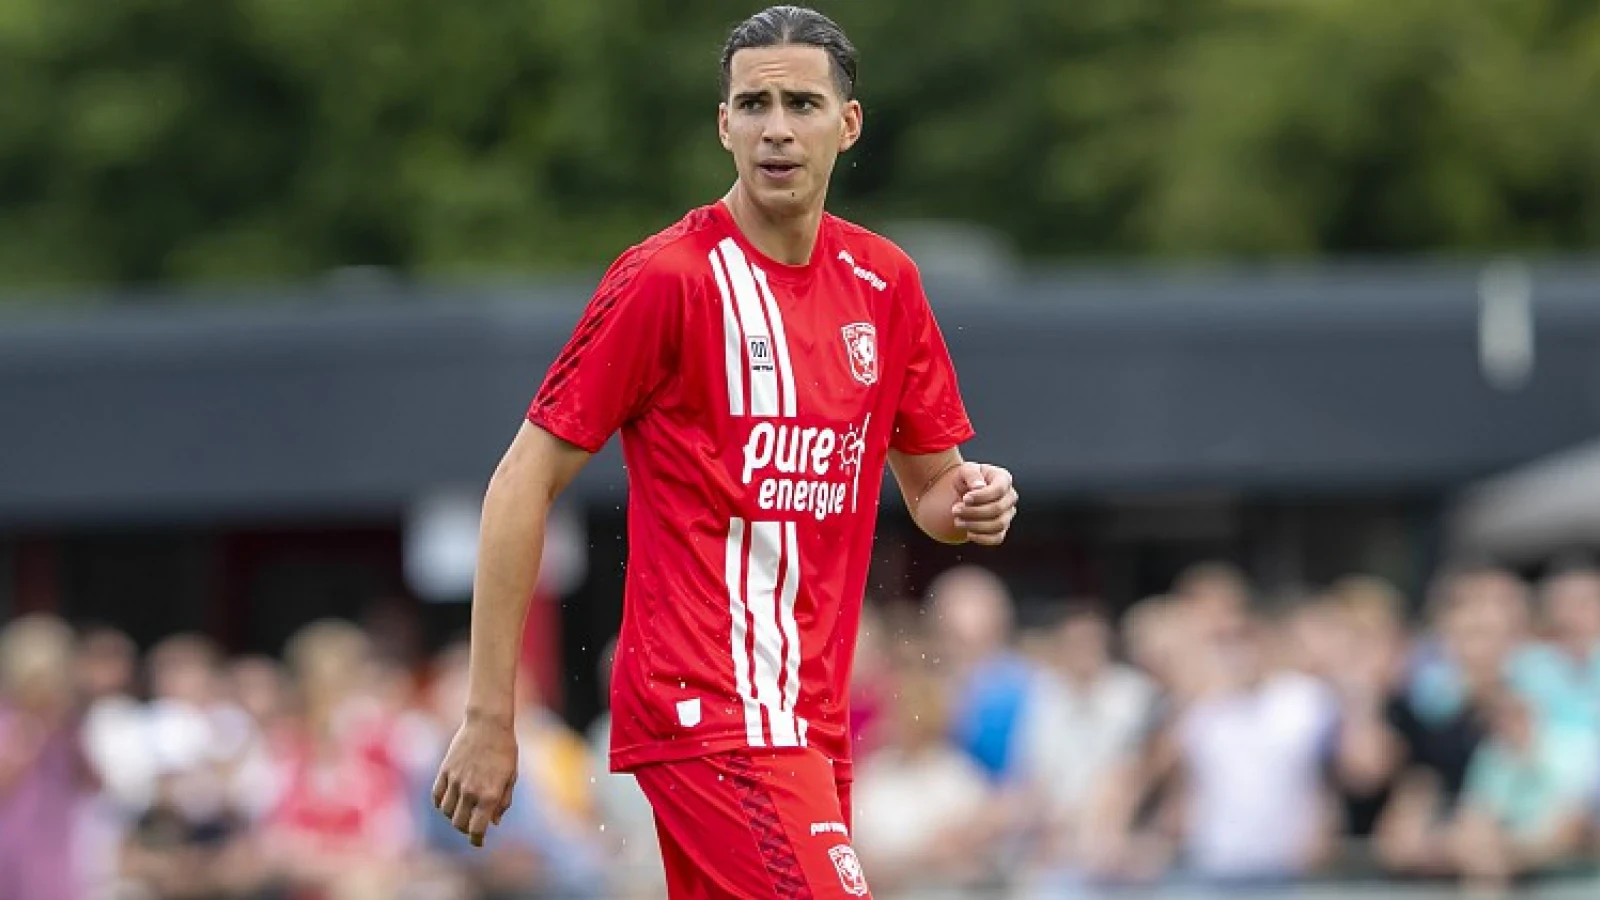 Tubantia: 'FC Twente wil Zerrouki niet verkopen'